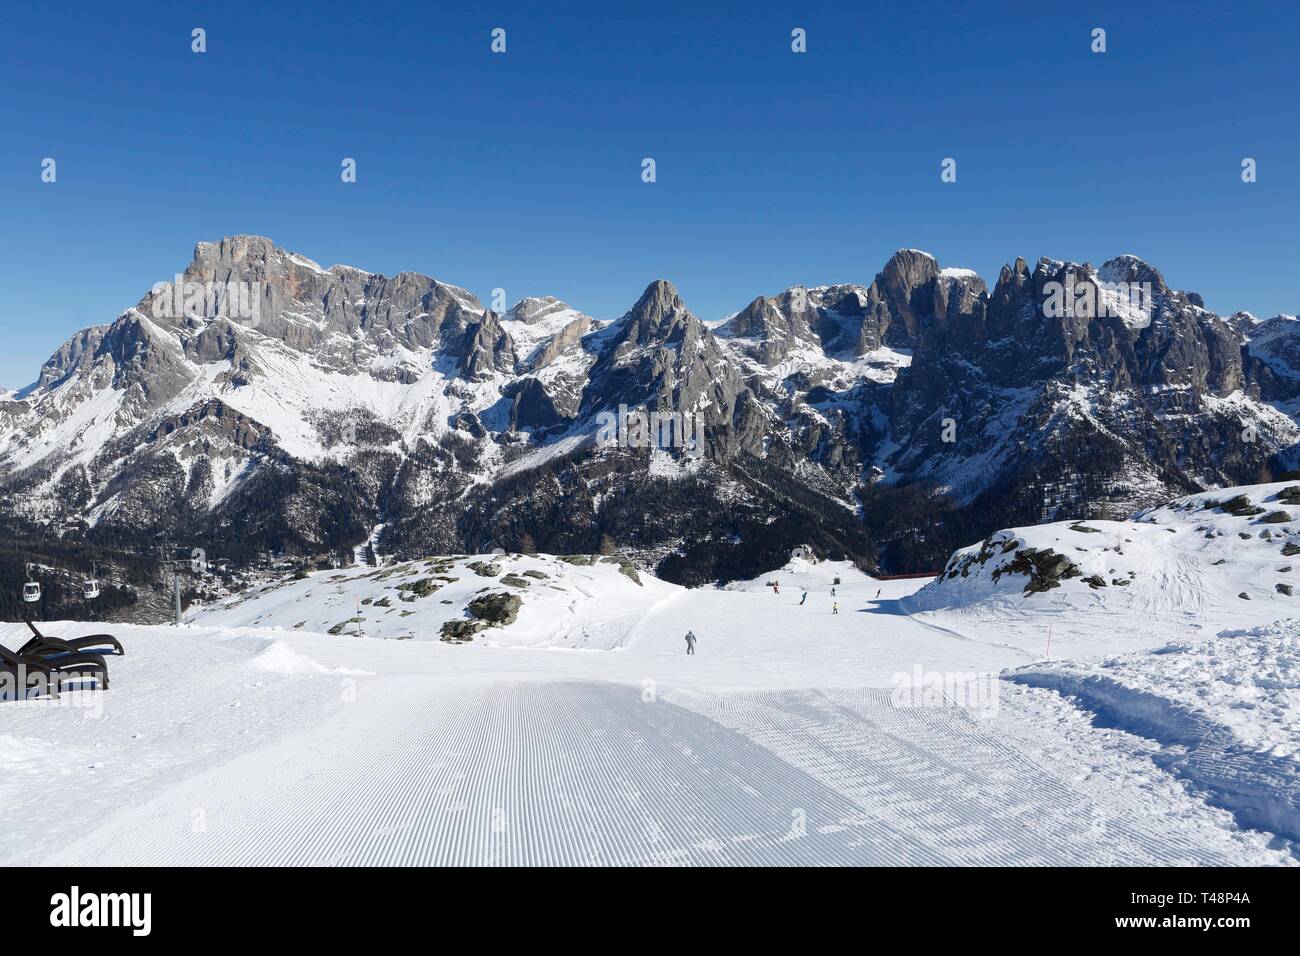 Sciatore sulla pista da sci, ski resort, San Martino di Castrozza, Trentino, Italia Foto Stock